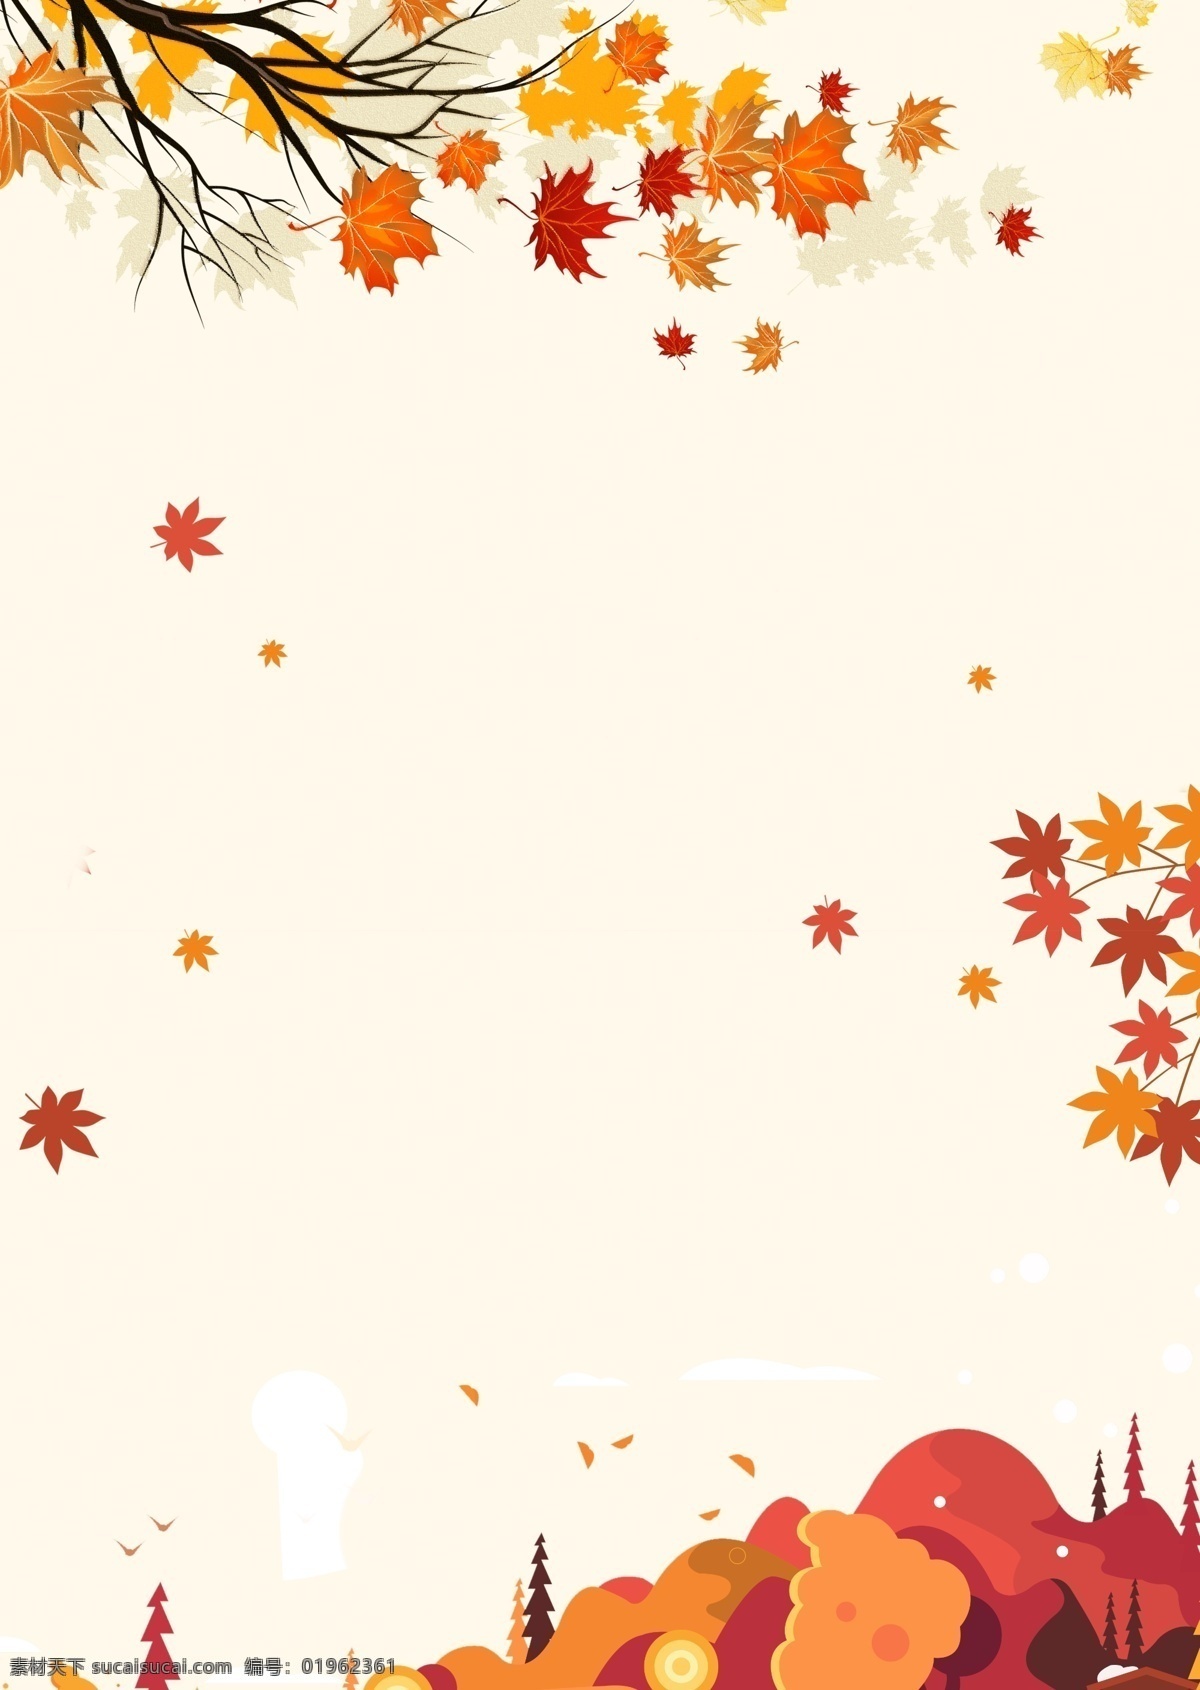 二十四节气 立秋 海报 模板 秋天 秋季 枫叶 落叶 金秋 丰收 创意合成